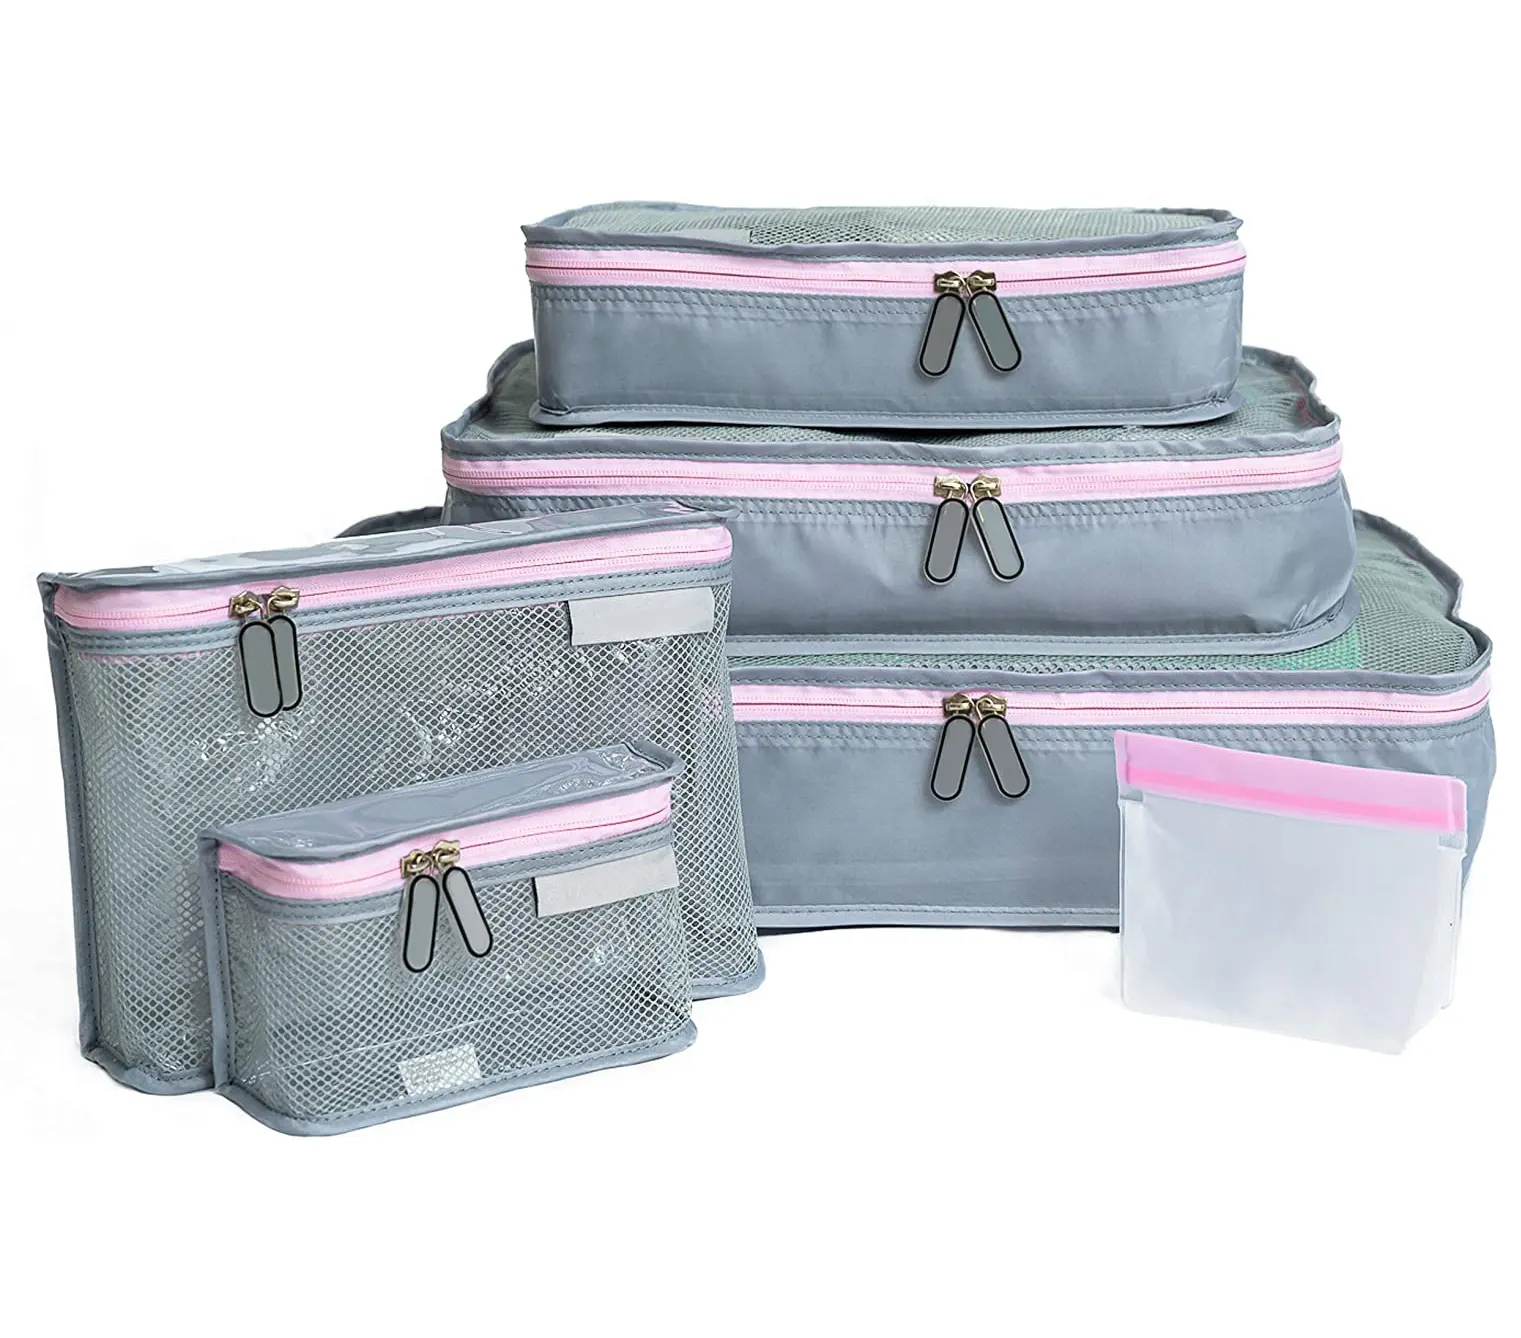 Lengkap Bagasi Organizer Bayi Perjalanan Kemasan Bundle Set dari 3 Packing Kubus 2 Tas Perlengkapan Mandi dan 1 Reusable Zip Tas